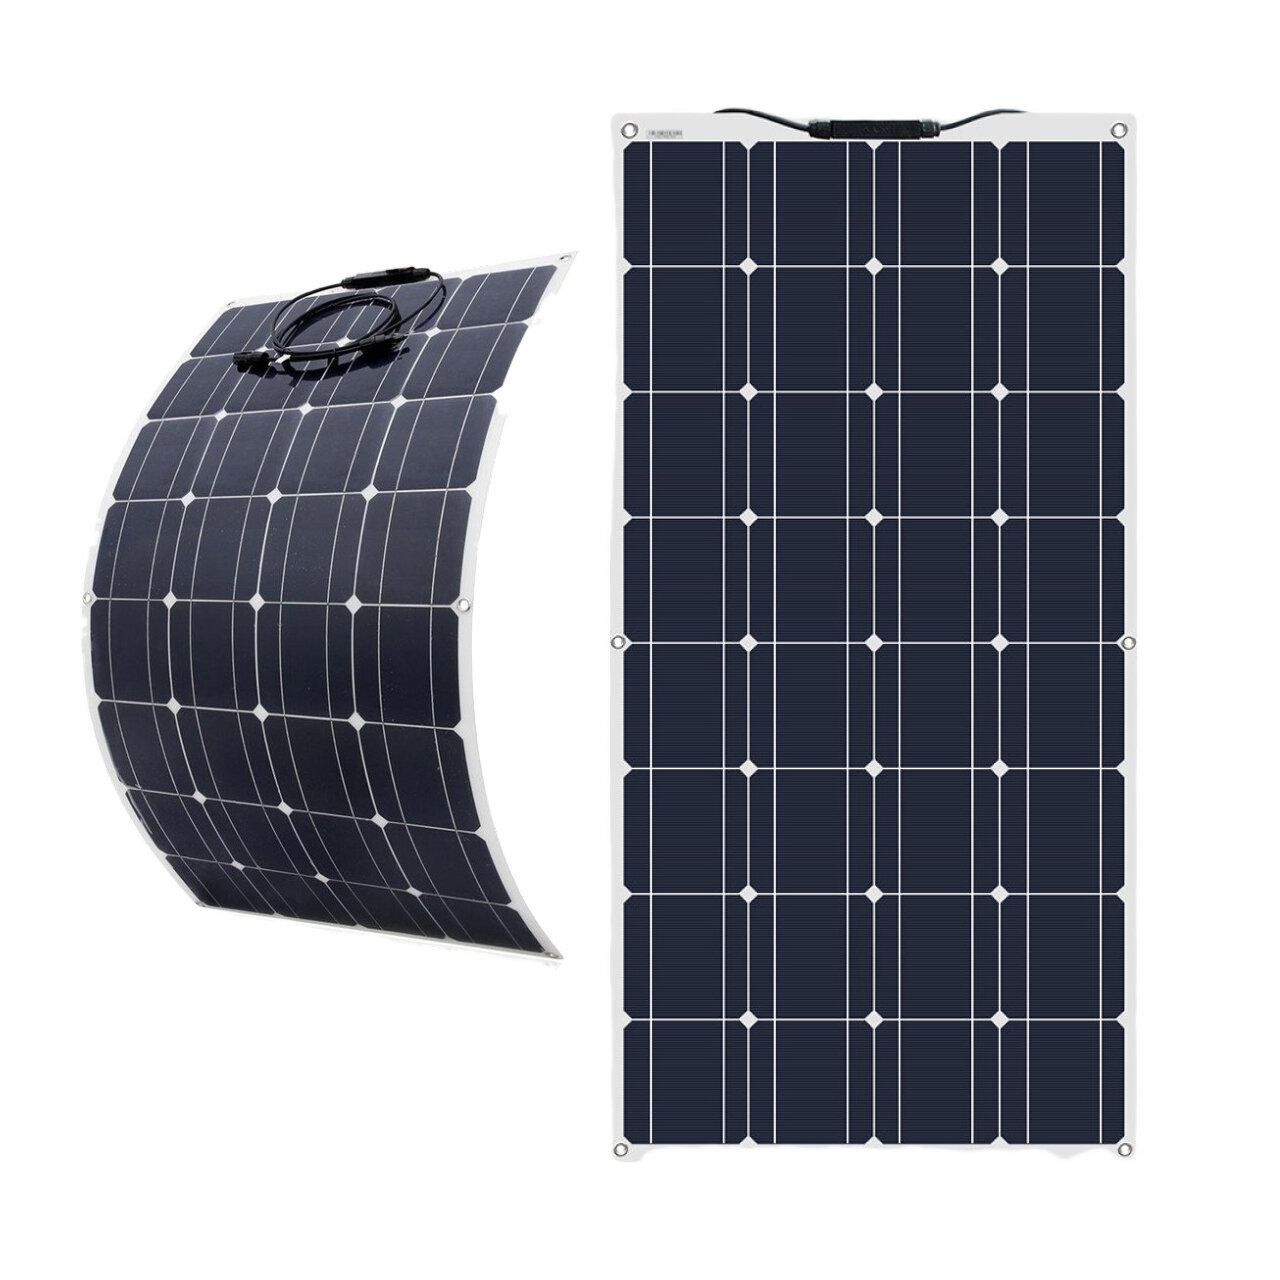 100W Solar Panel Esnek Taşınabilir Batarya Şarj Cihazı Monokristal Solar Hücre Outdoor Kampçılık Seyahat